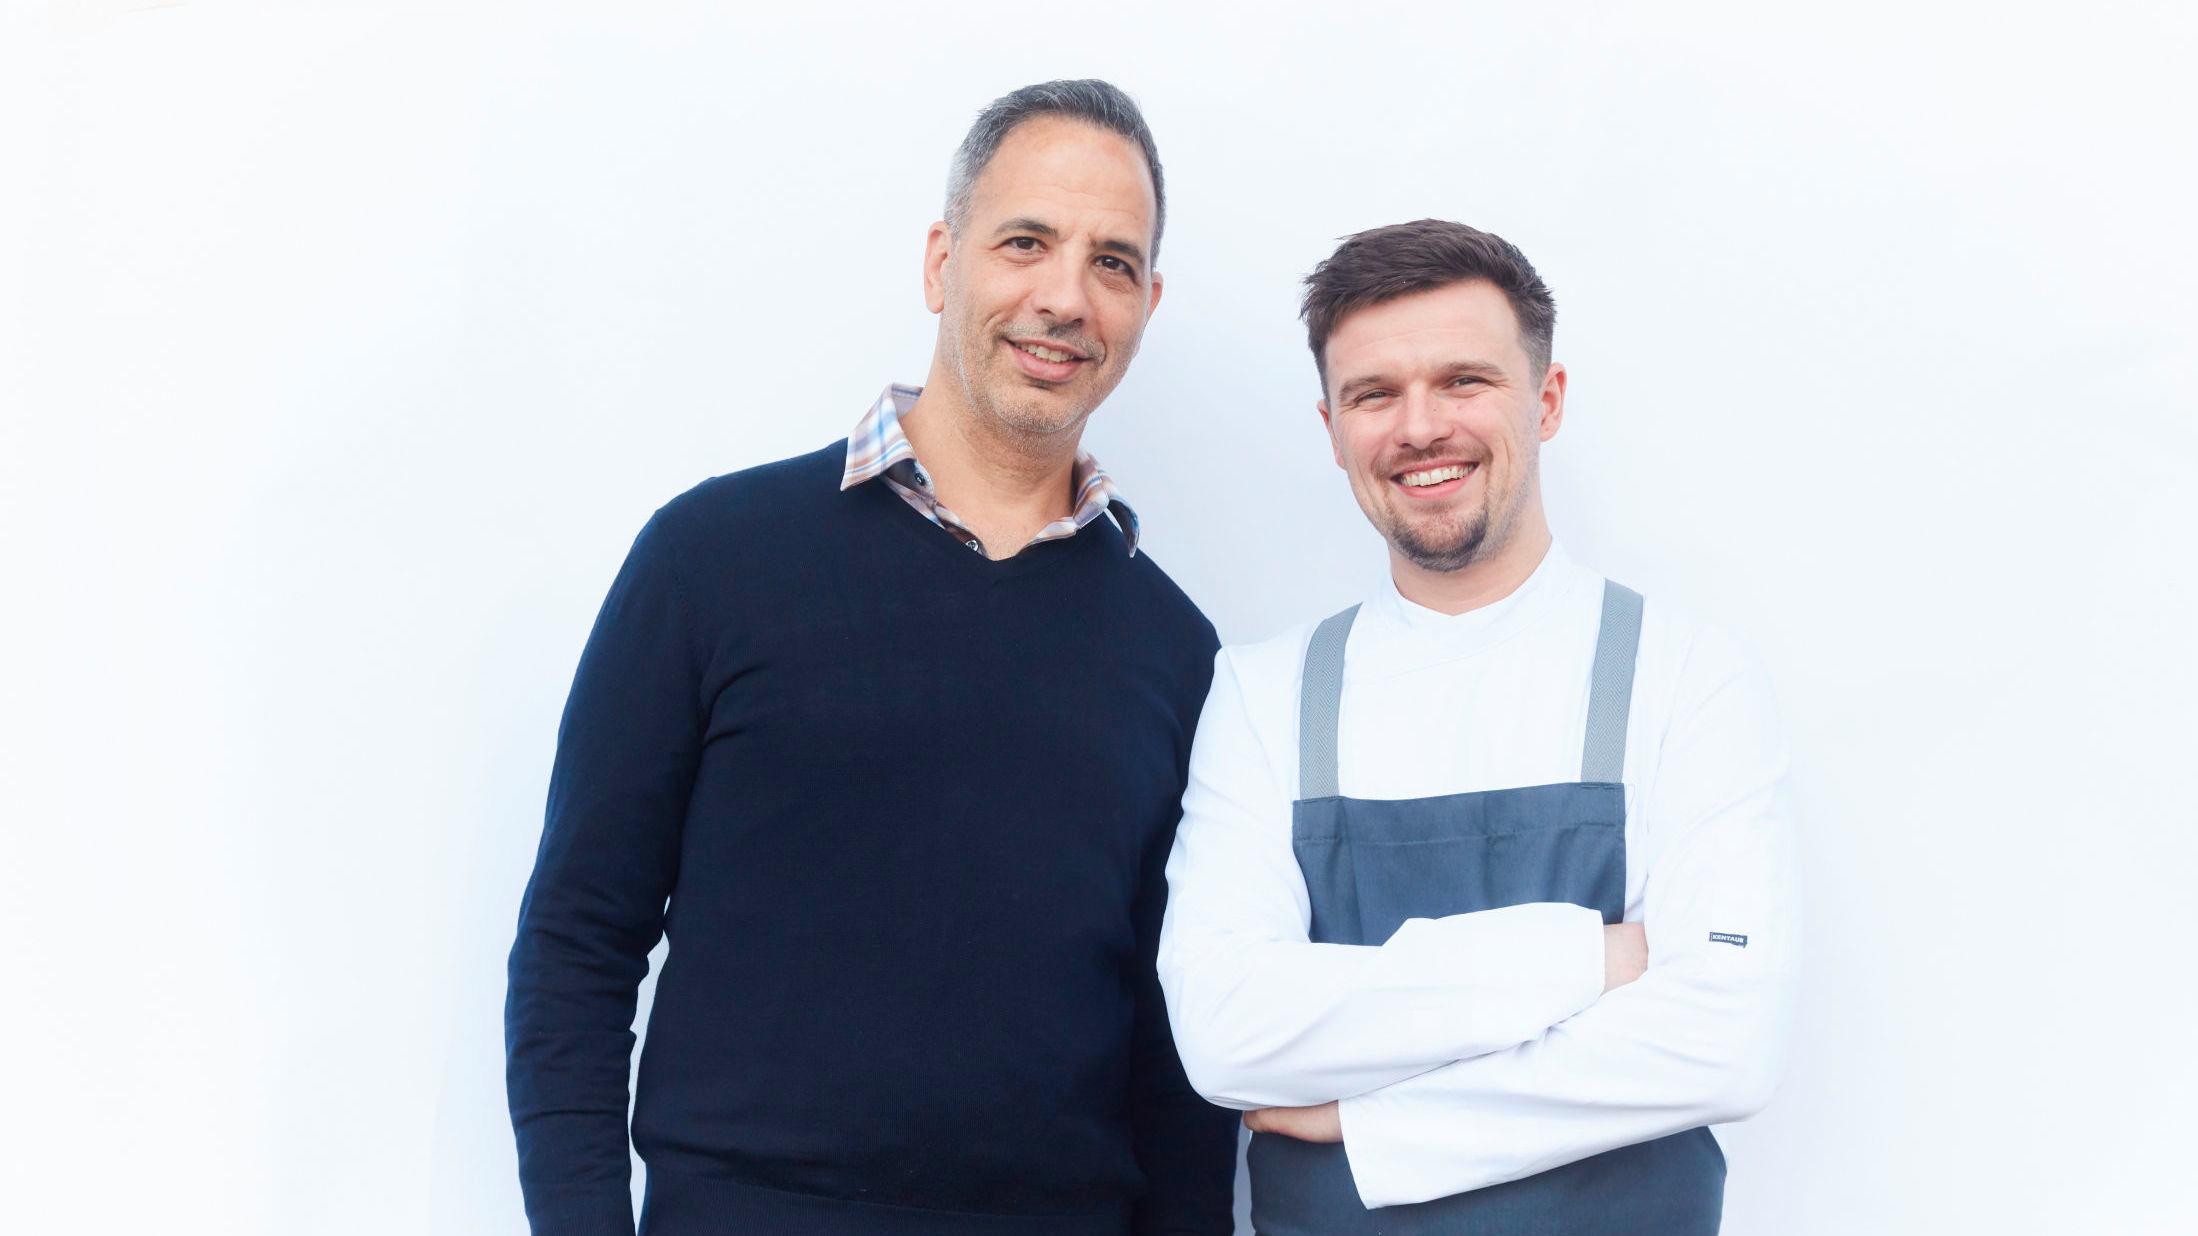 SPIRER OG GROR: Yotam Ottolenghi (til venstre), som er kjent for sin grønnsaksbaserte mat, utvider nå med en ny restaurant. Neil Campbell (til høyre) blir hovedkokk. Foto: David Loftus